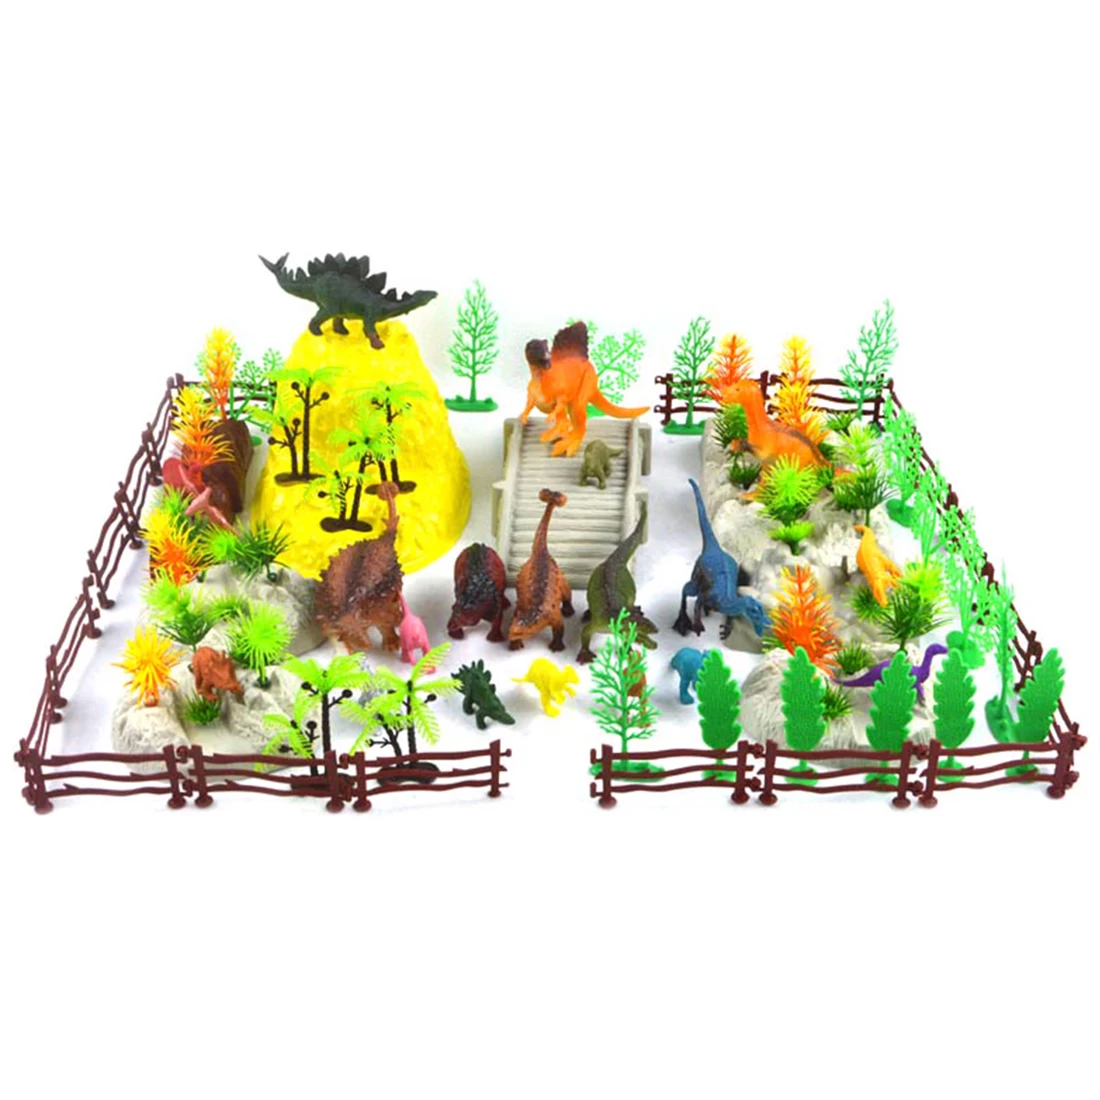 100 шт. пластик динозавр ферма животные модель статические сборки украшения игрушка набор здание кубики, детские игрушки цифры игрушки для